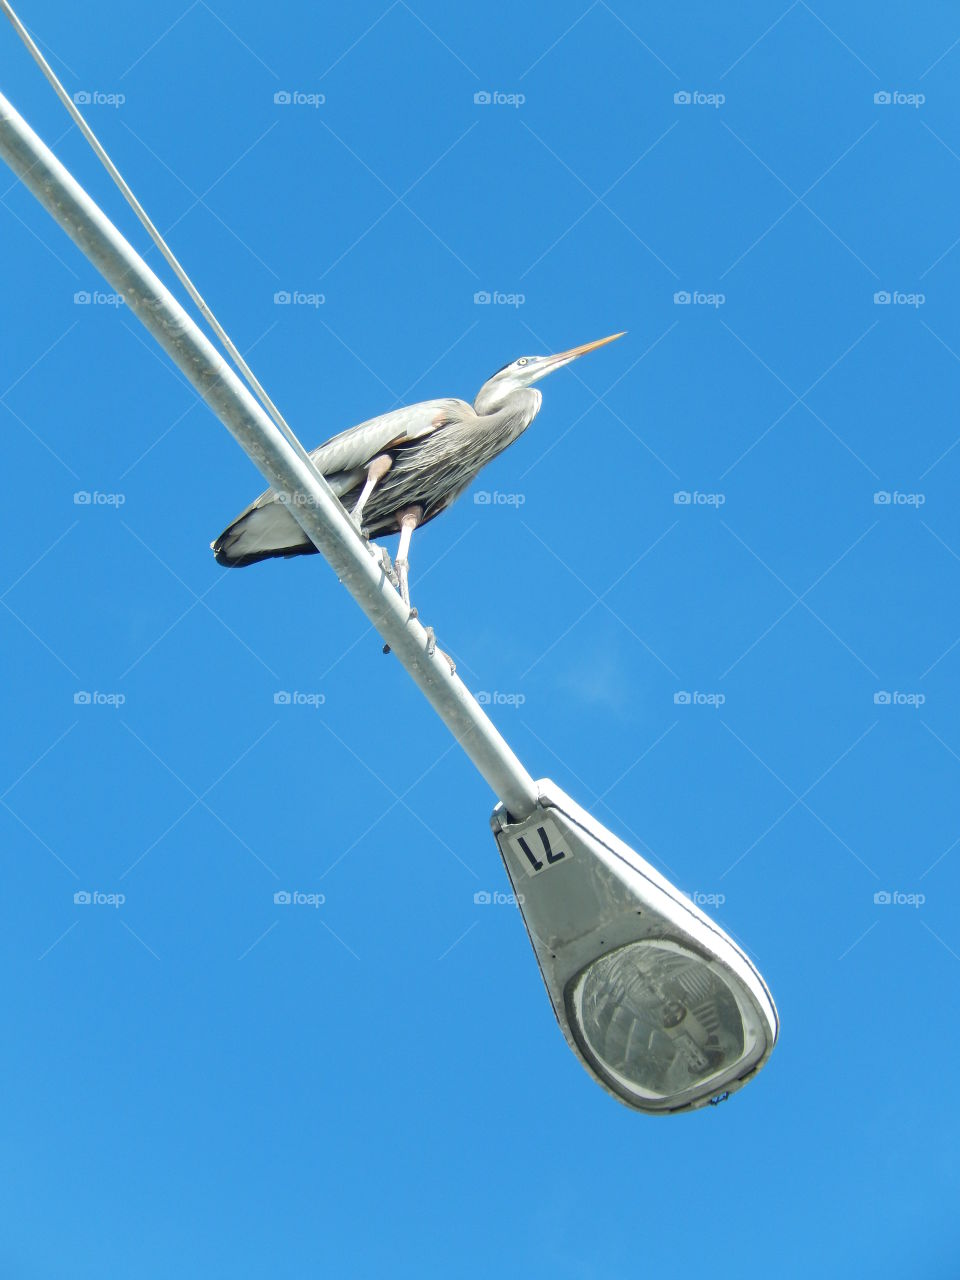 Bird on a lamp post